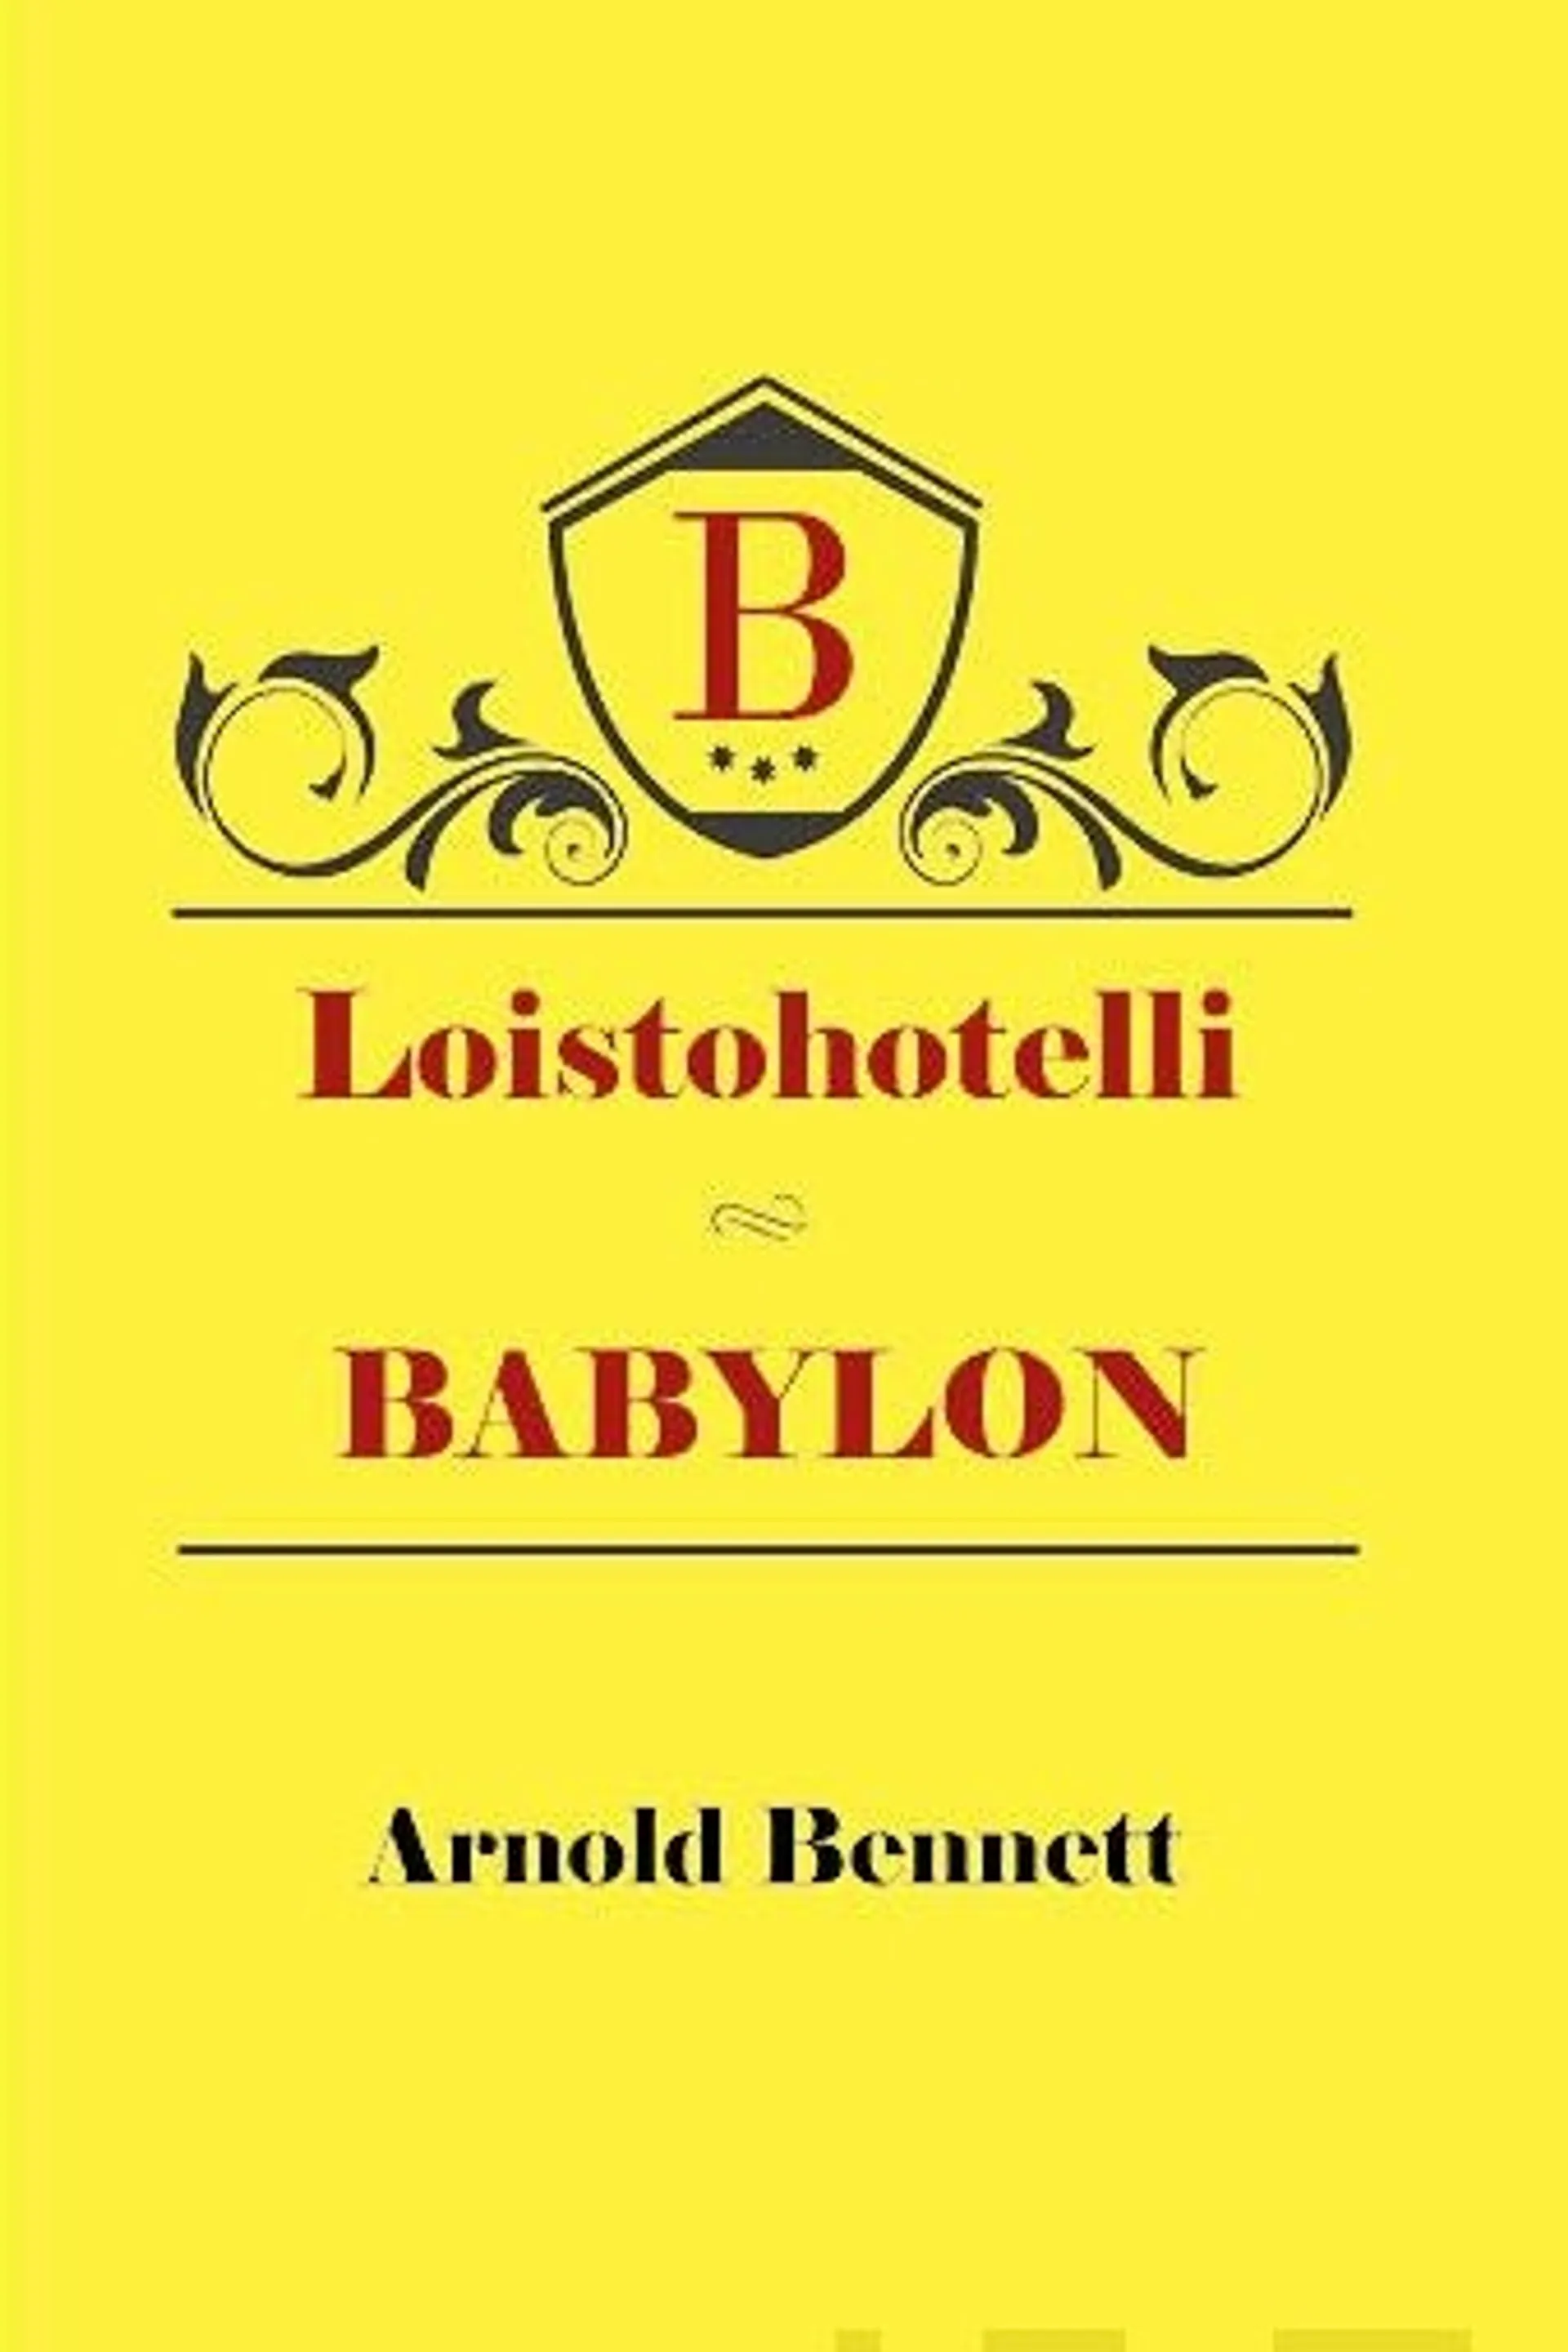 Bennett, Loistohotelli Babylon